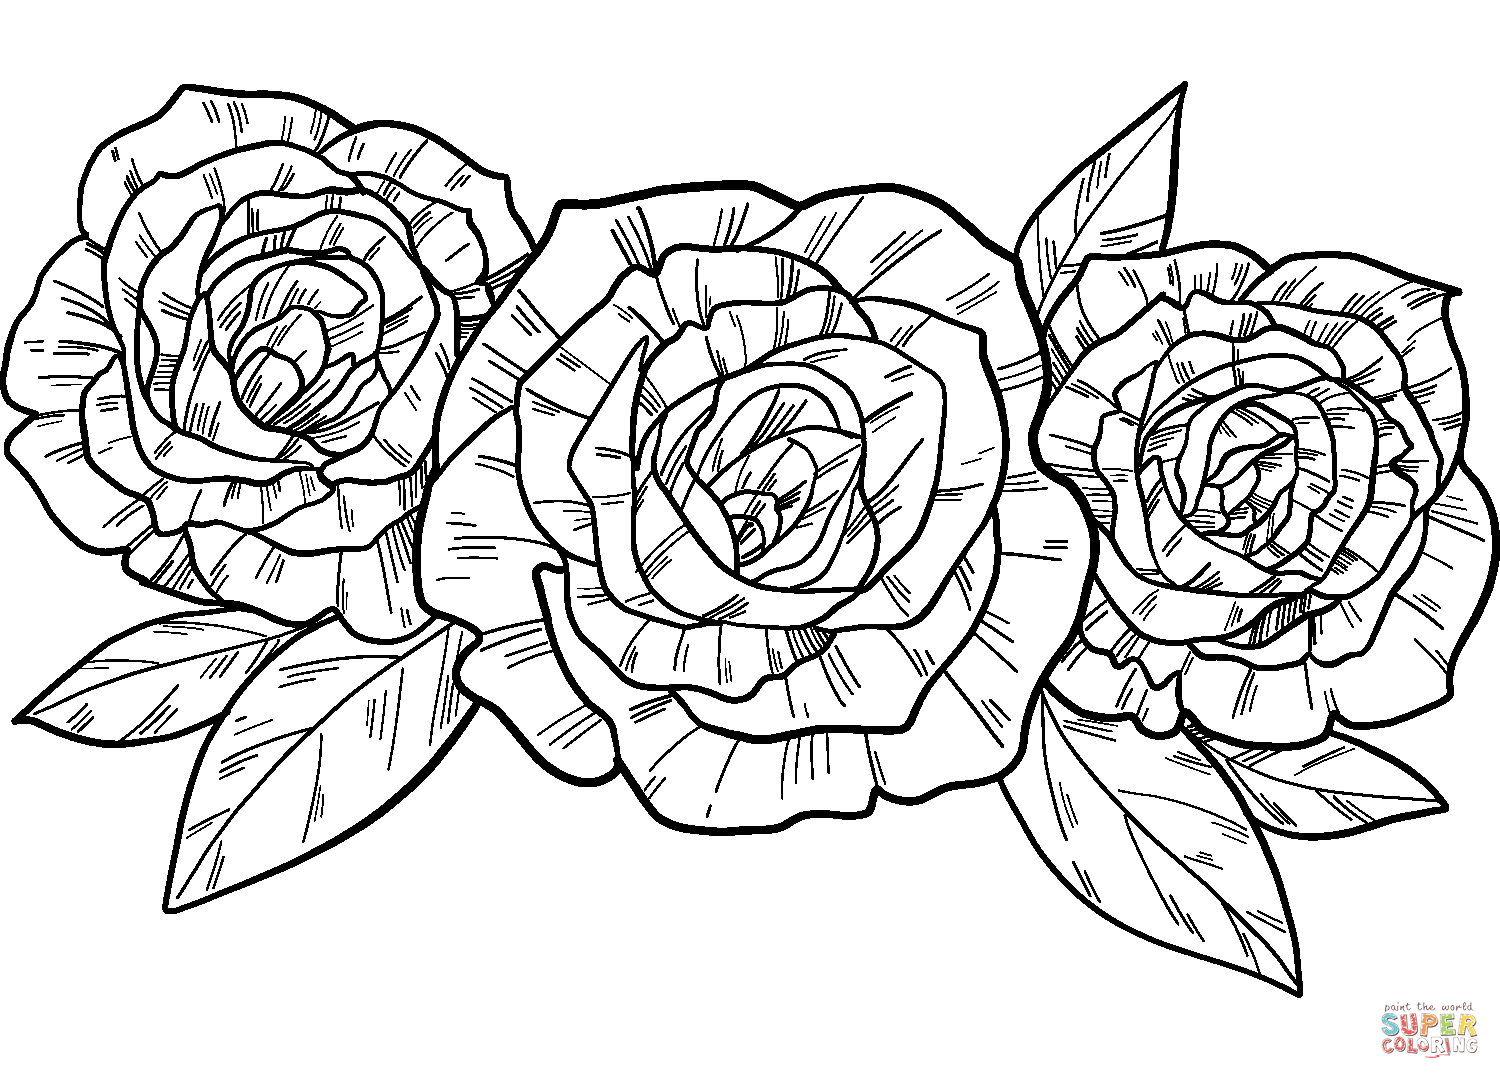 Des roses de roses